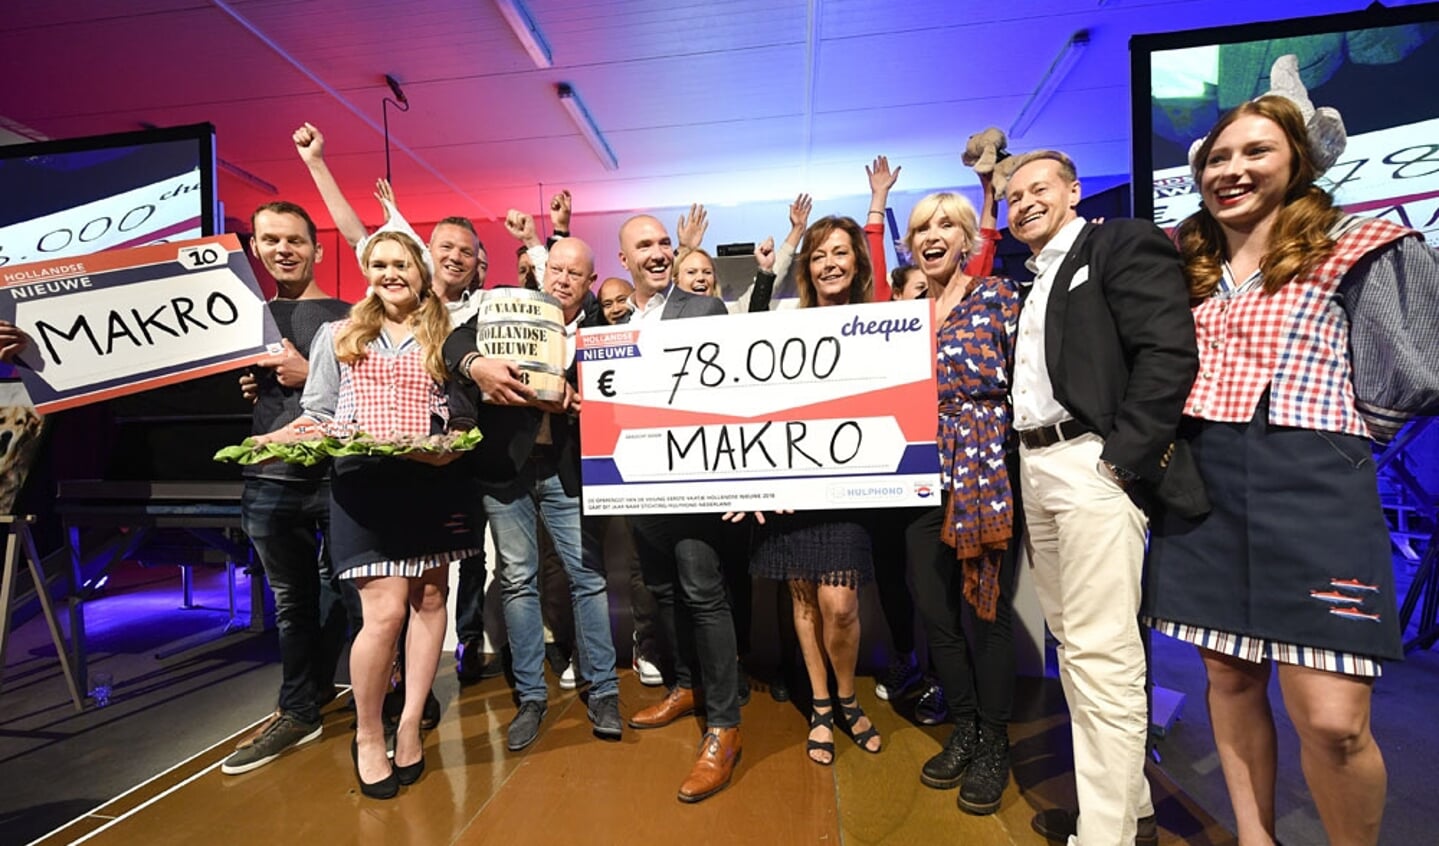  Foto: Goffe Struiksma - Een drukbezochte veiling met tientallen enthousiaste bieders uit de sector leverde 78.000 euro op voor Stichting Hulphond. 